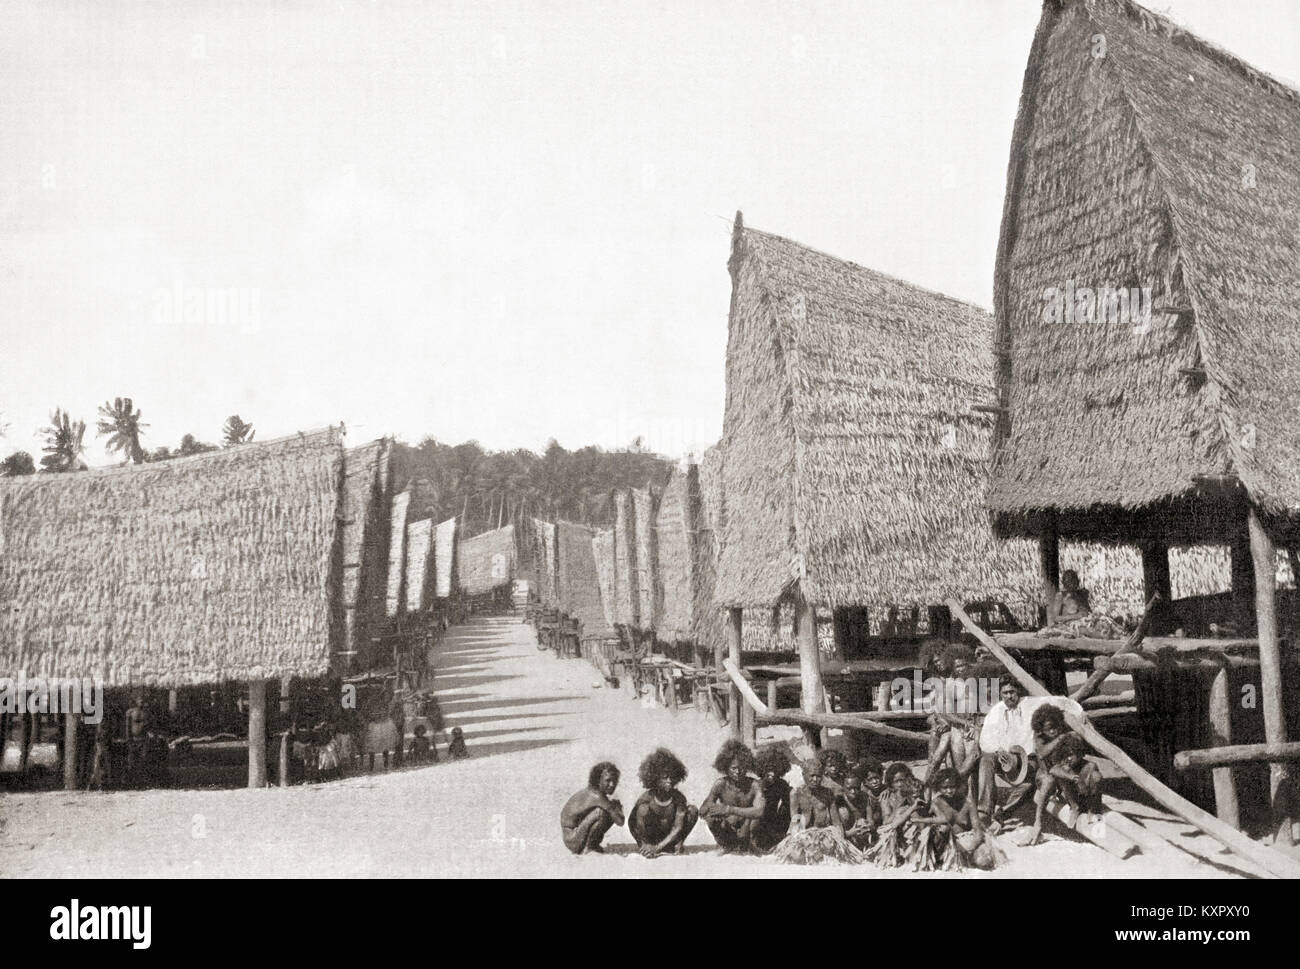 Un village en Guinée, l'Océanie à la fin du xixe siècle. Des merveilles du monde, publié vers 1920. Banque D'Images